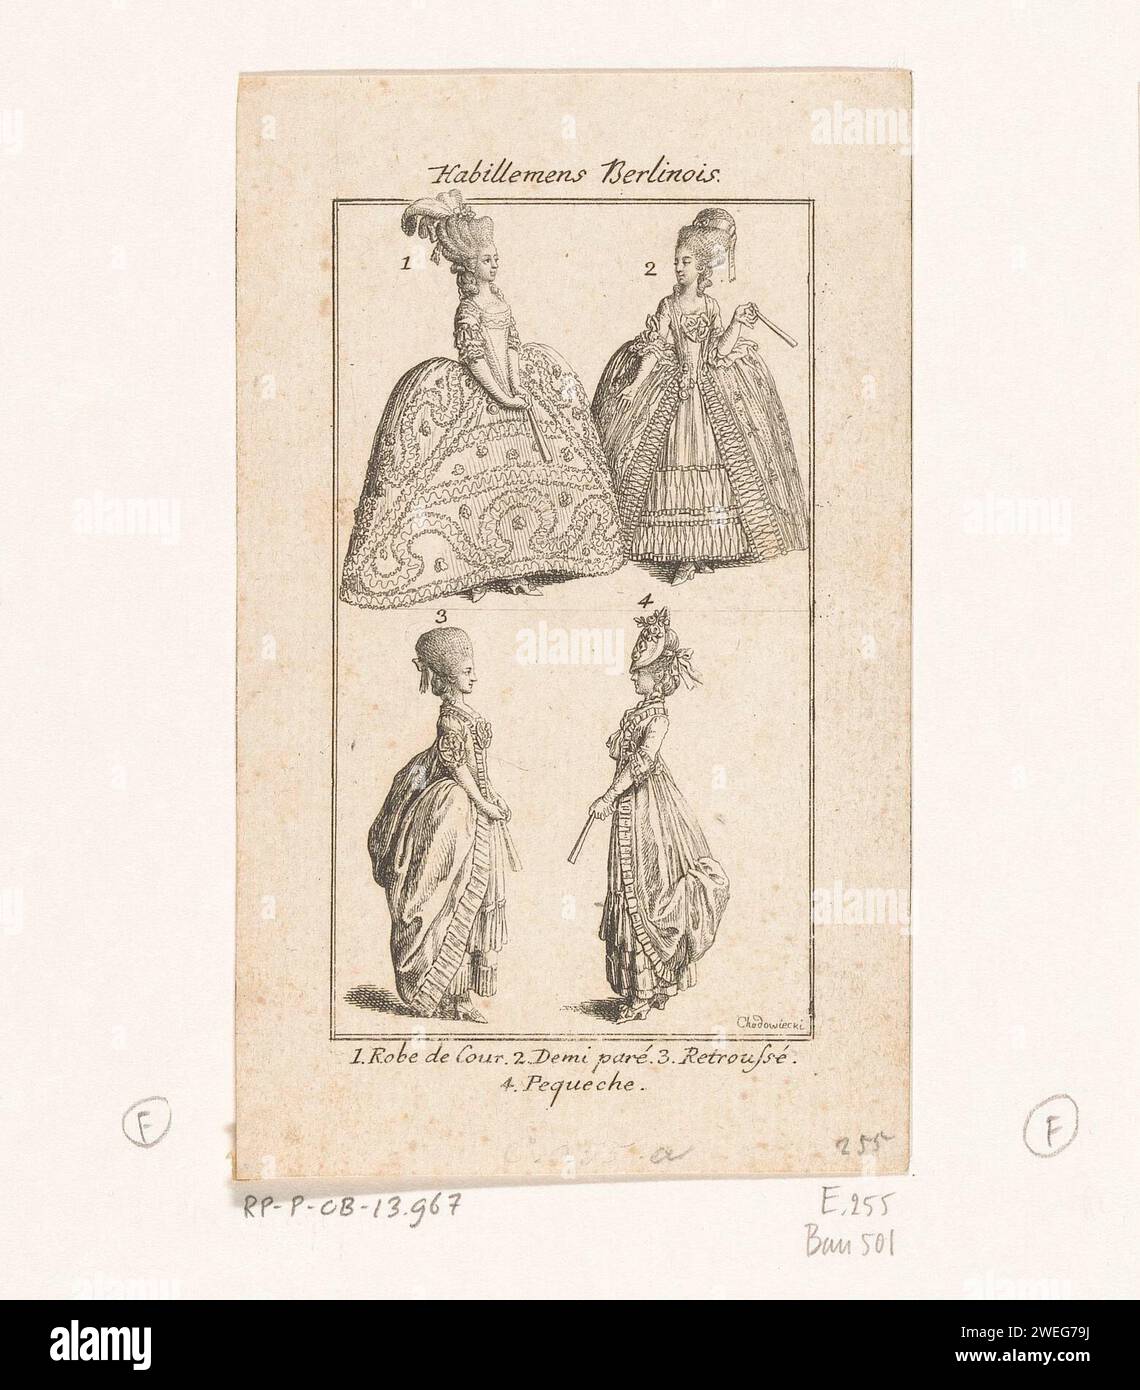 Quattro ladeskostuums, Daniel Nikolaus Chodowiecki, 1778 stampano quattro diversi costumi da donna tedeschi alla fine degli anni '70 del XVIII secolo. In secondo luogo è fornito il titolo Habillemens Berlinois. I costumi sono numerati e i nomi sono menzionati in fondo. In alto a sinistra = 1: Robe de Cour; a destra = 2: Demi Paré; in basso a sinistra = 3: Retroussé; a destra = 4: Pequeche. Acconciature in carta di acconciature - AA -  donne. abito, abito: abito da corte o abito da corte (+ abiti da donna). abito, abito (+ abiti da donna). copricapo: cappello (+ abiti da donna) Foto Stock